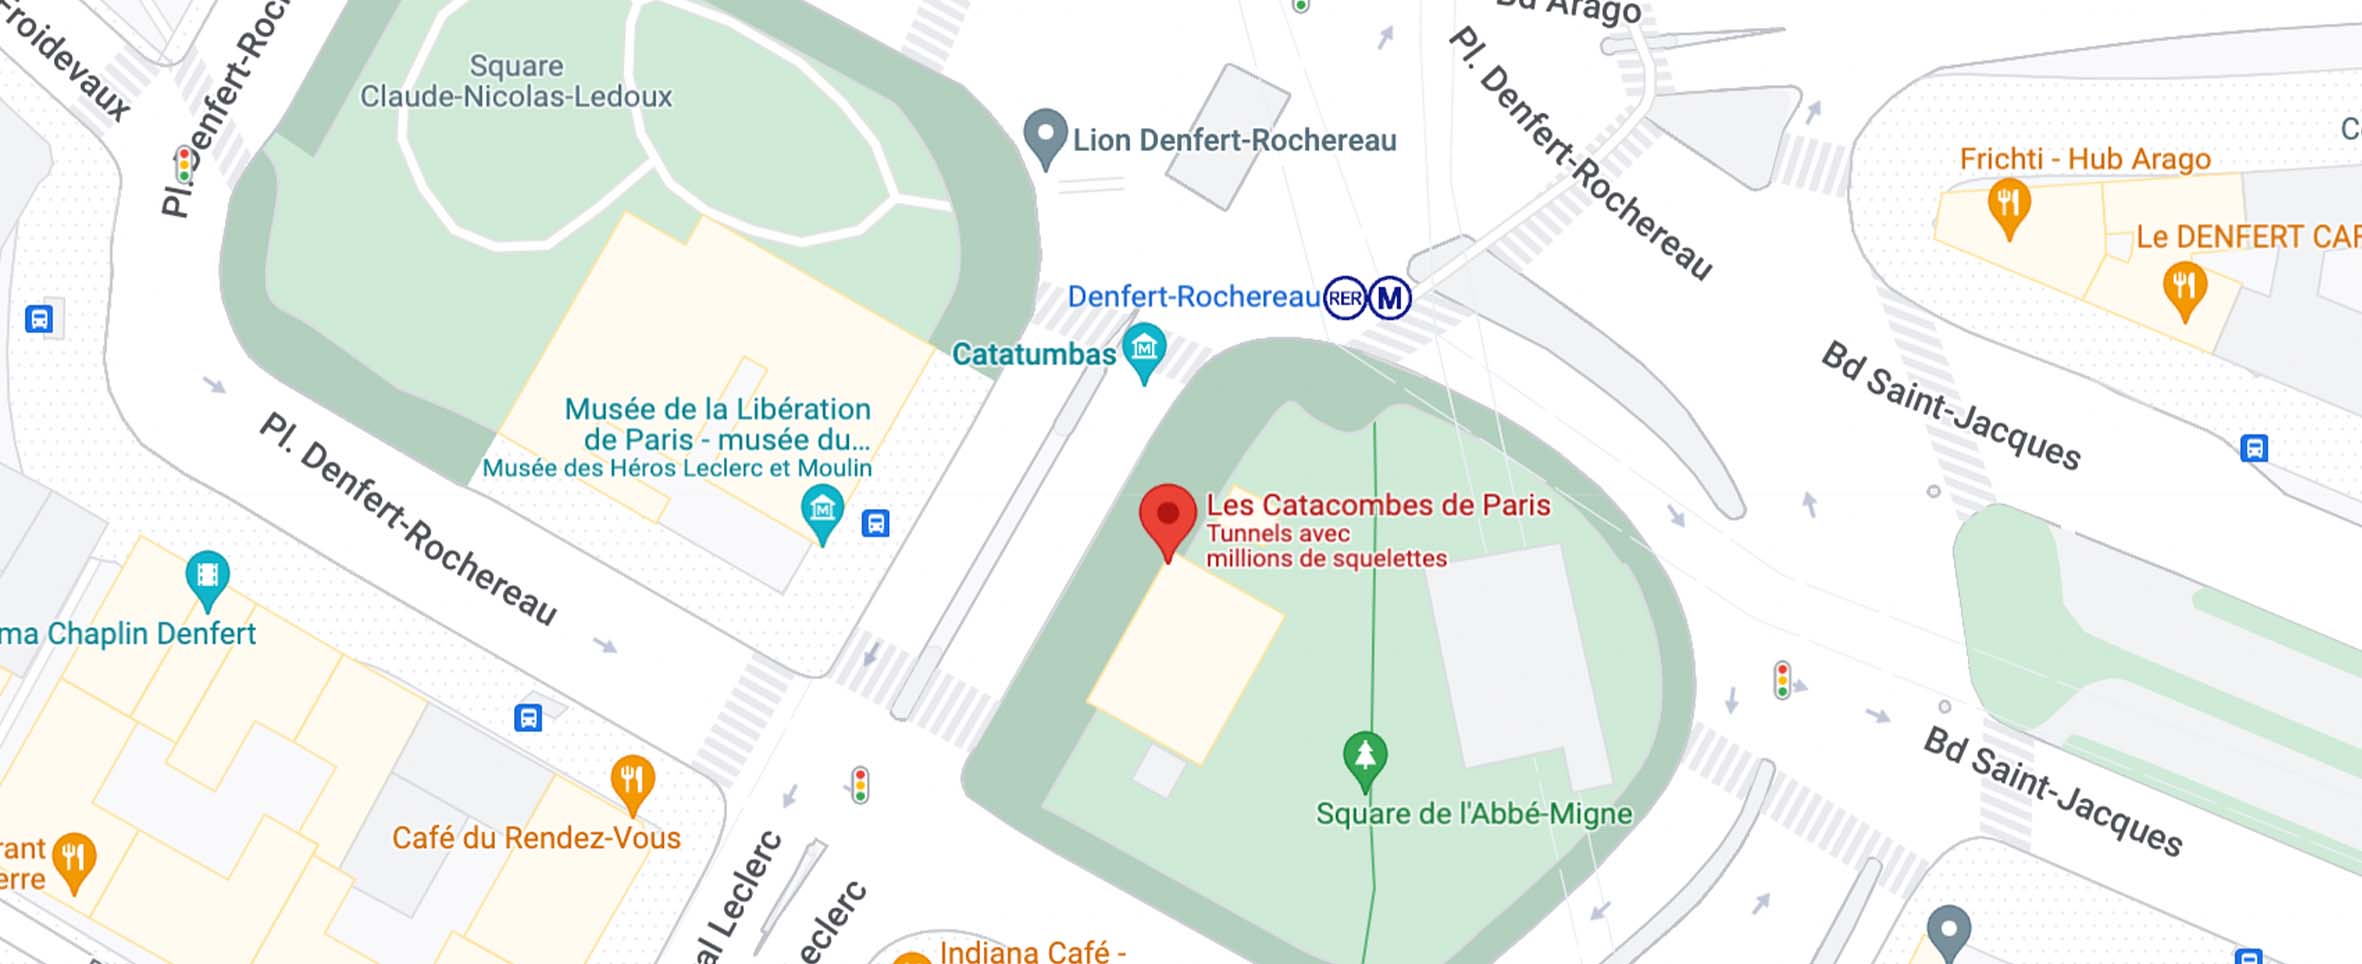 Mapa para llegar a las catacumbas de París